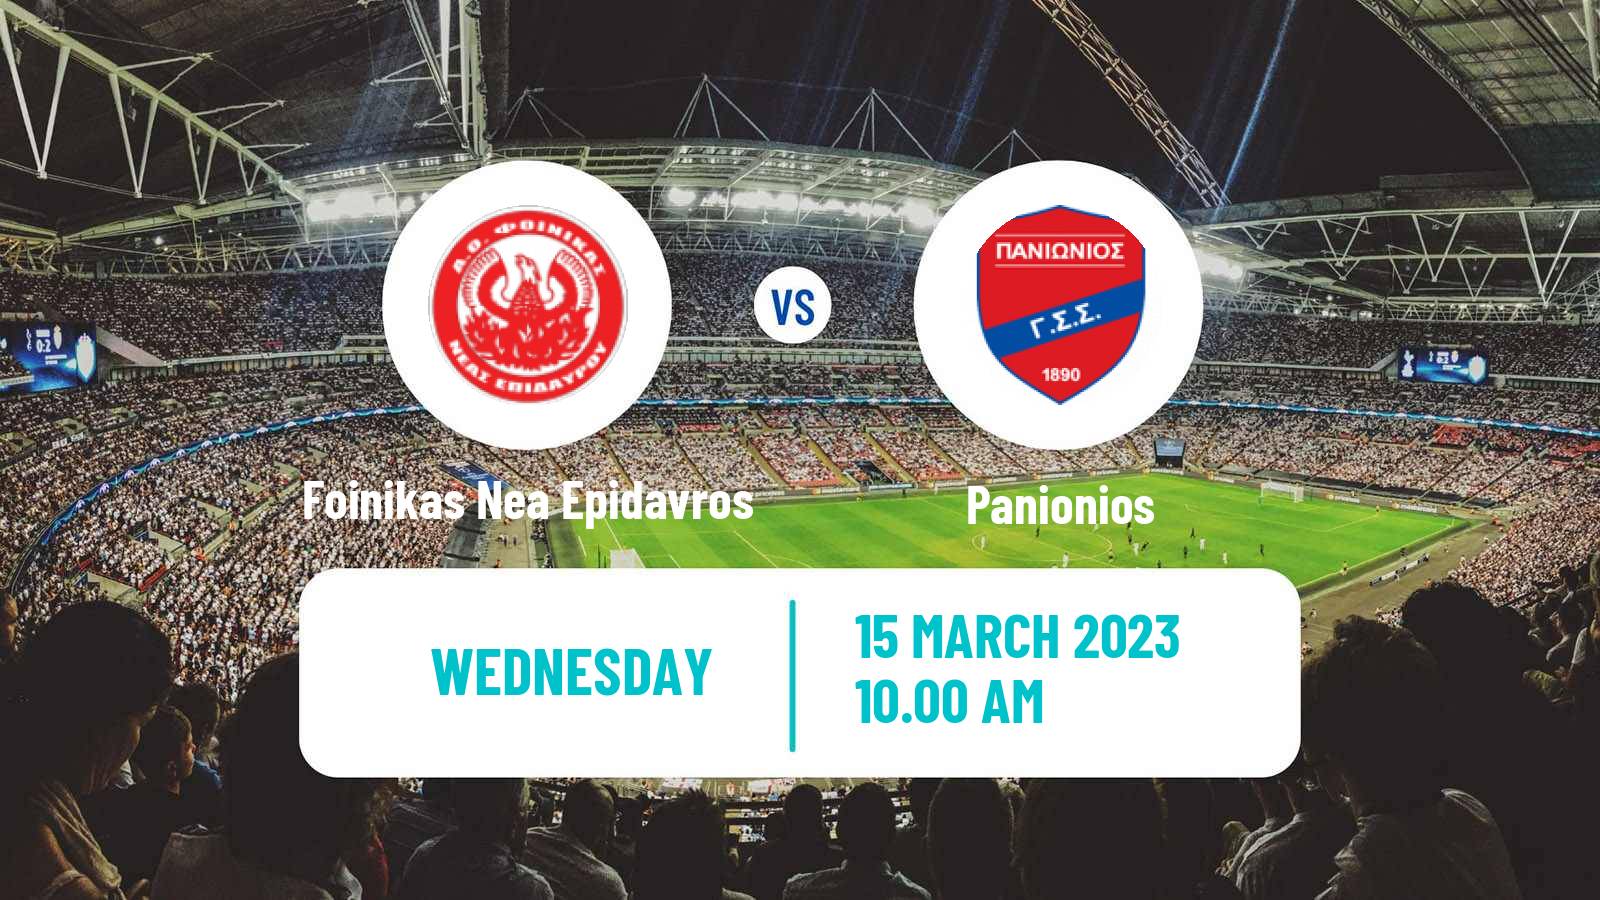 Soccer Greek Gamma Ethniki - Group 4 Foinikas Nea Epidavros - Panionios